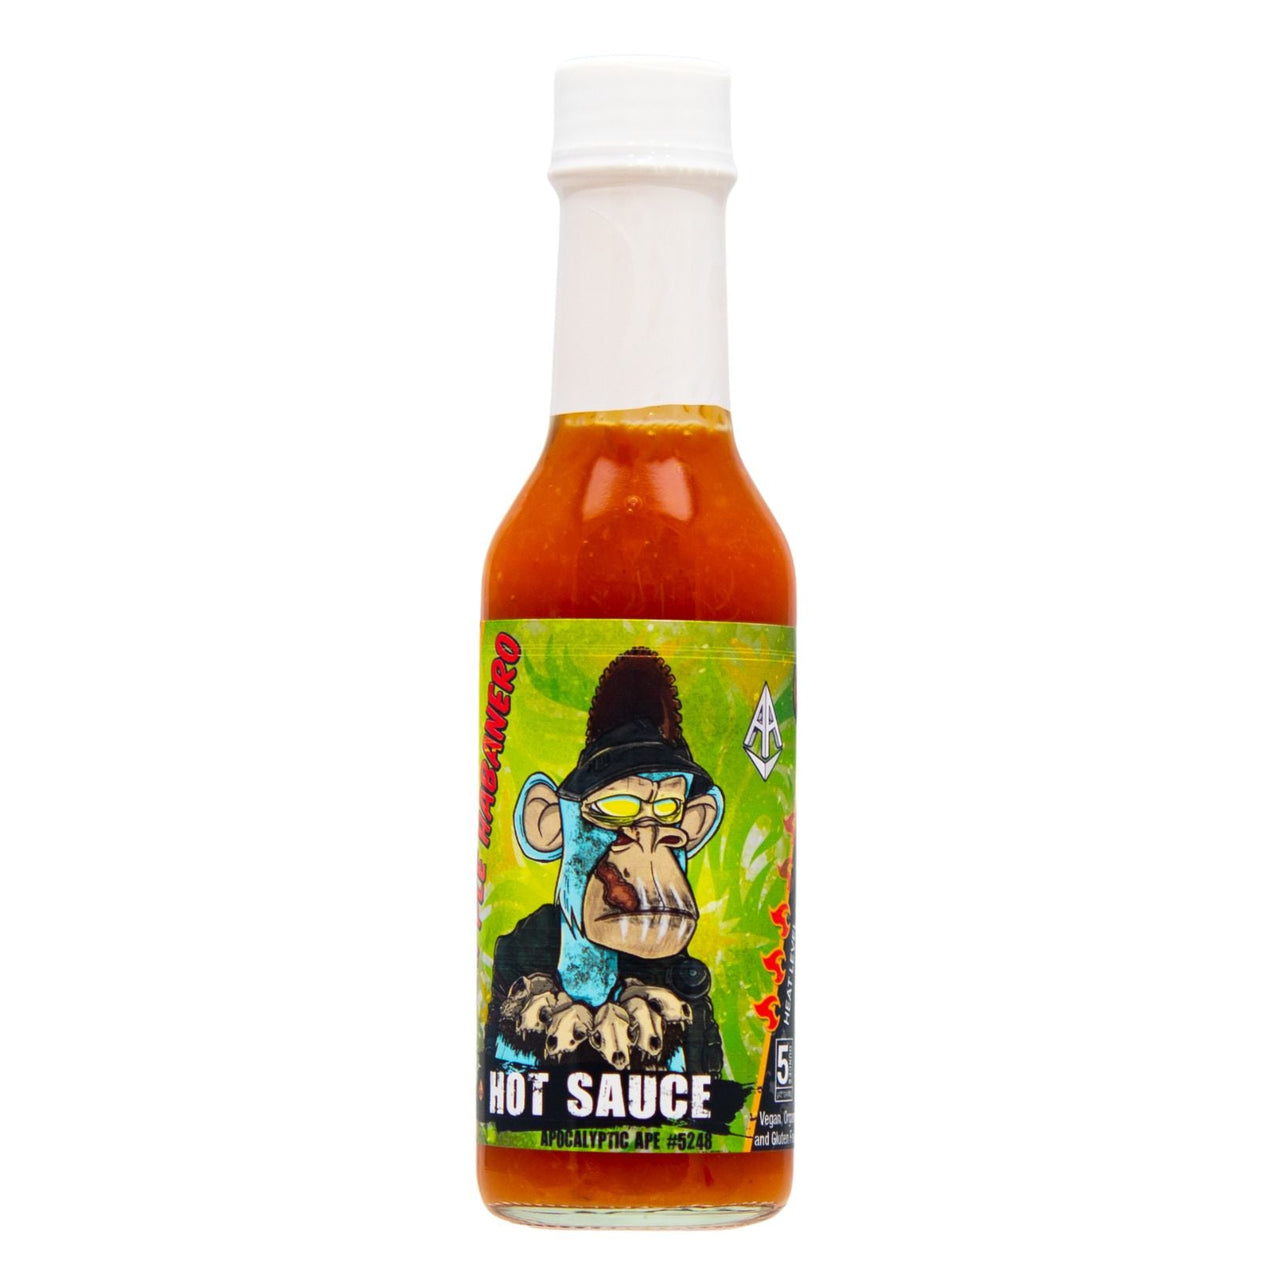 Apocalyptic Ape #5248 Pineapple Habanero Hot Sauce